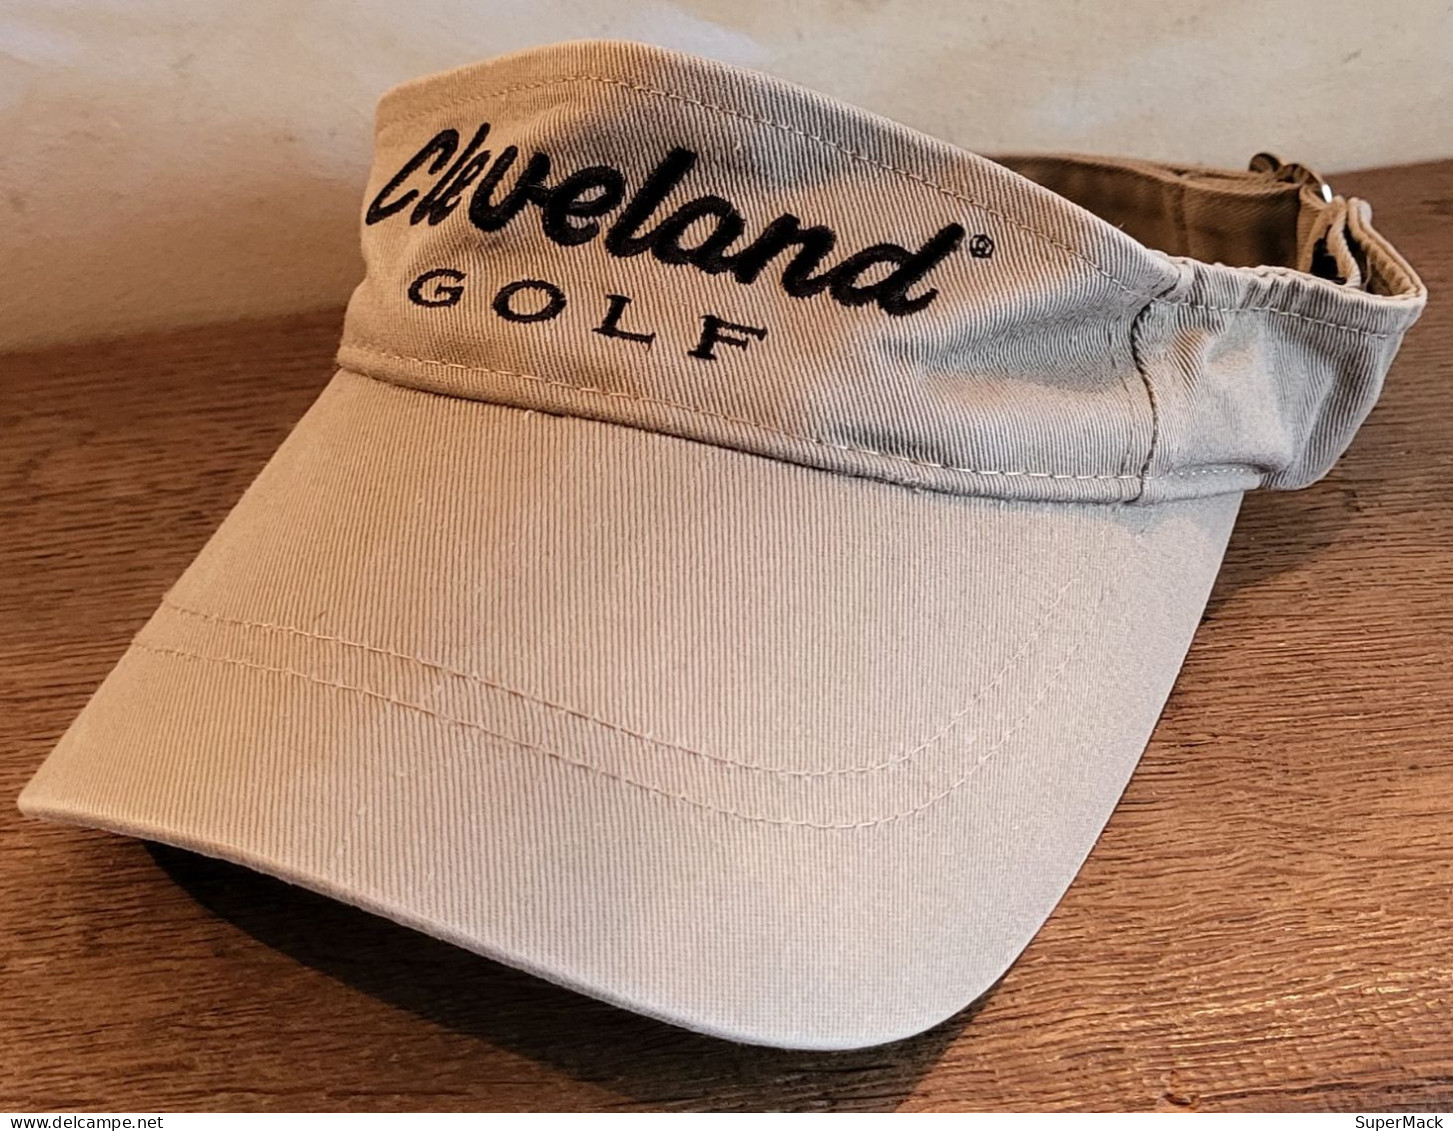 CLEVELAND GOLF, Casquette De Golf Beige, 100% Coton ### NEUVE ### - Apparel, Souvenirs & Other